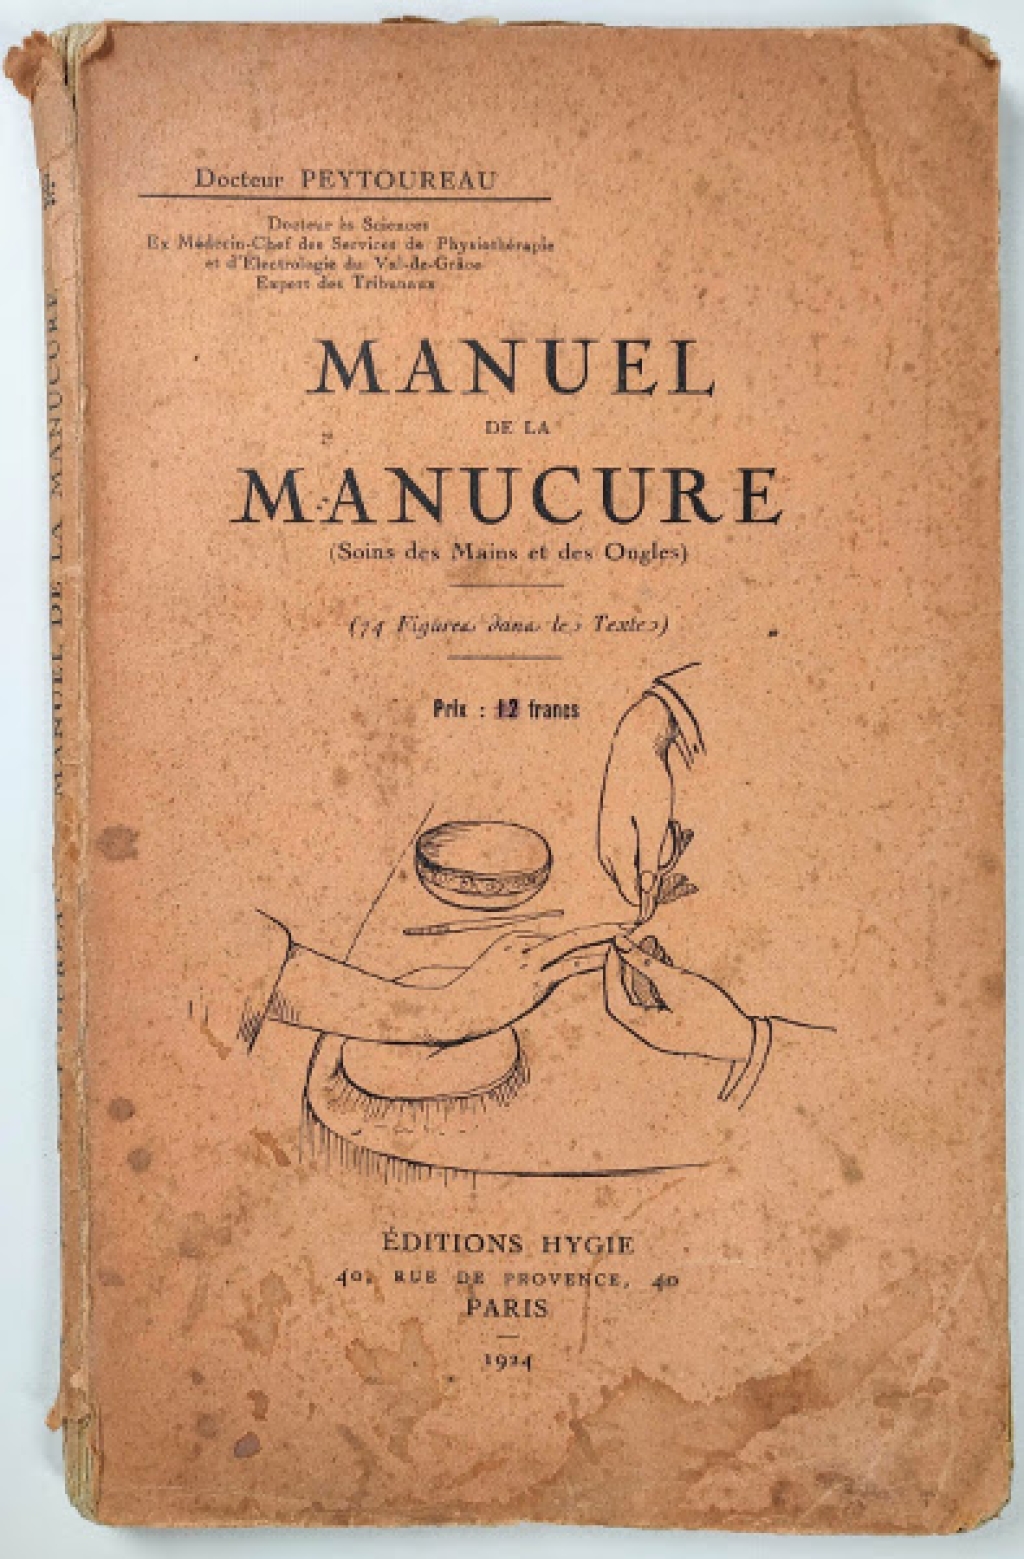 Manuel de la manucure (soins des mains et des ongles)